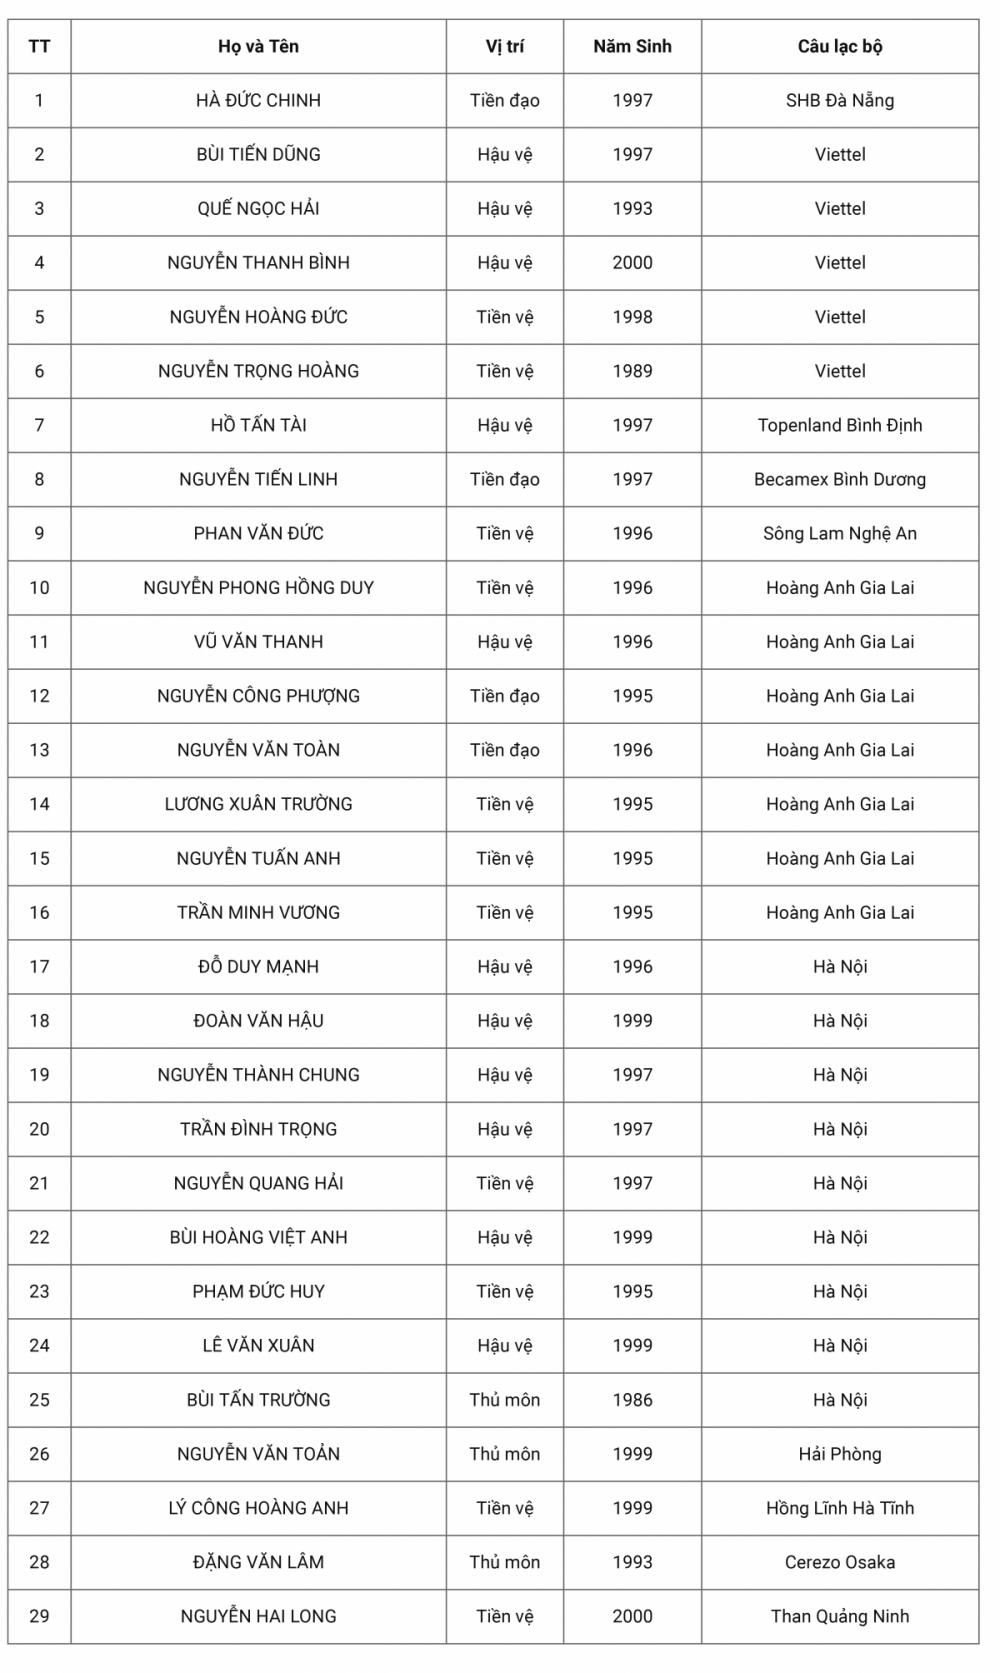 Vòng loại World Cup 2022: Danh sách chính thức của đội tuyển UAE Việt Nam lên đường sang UAE